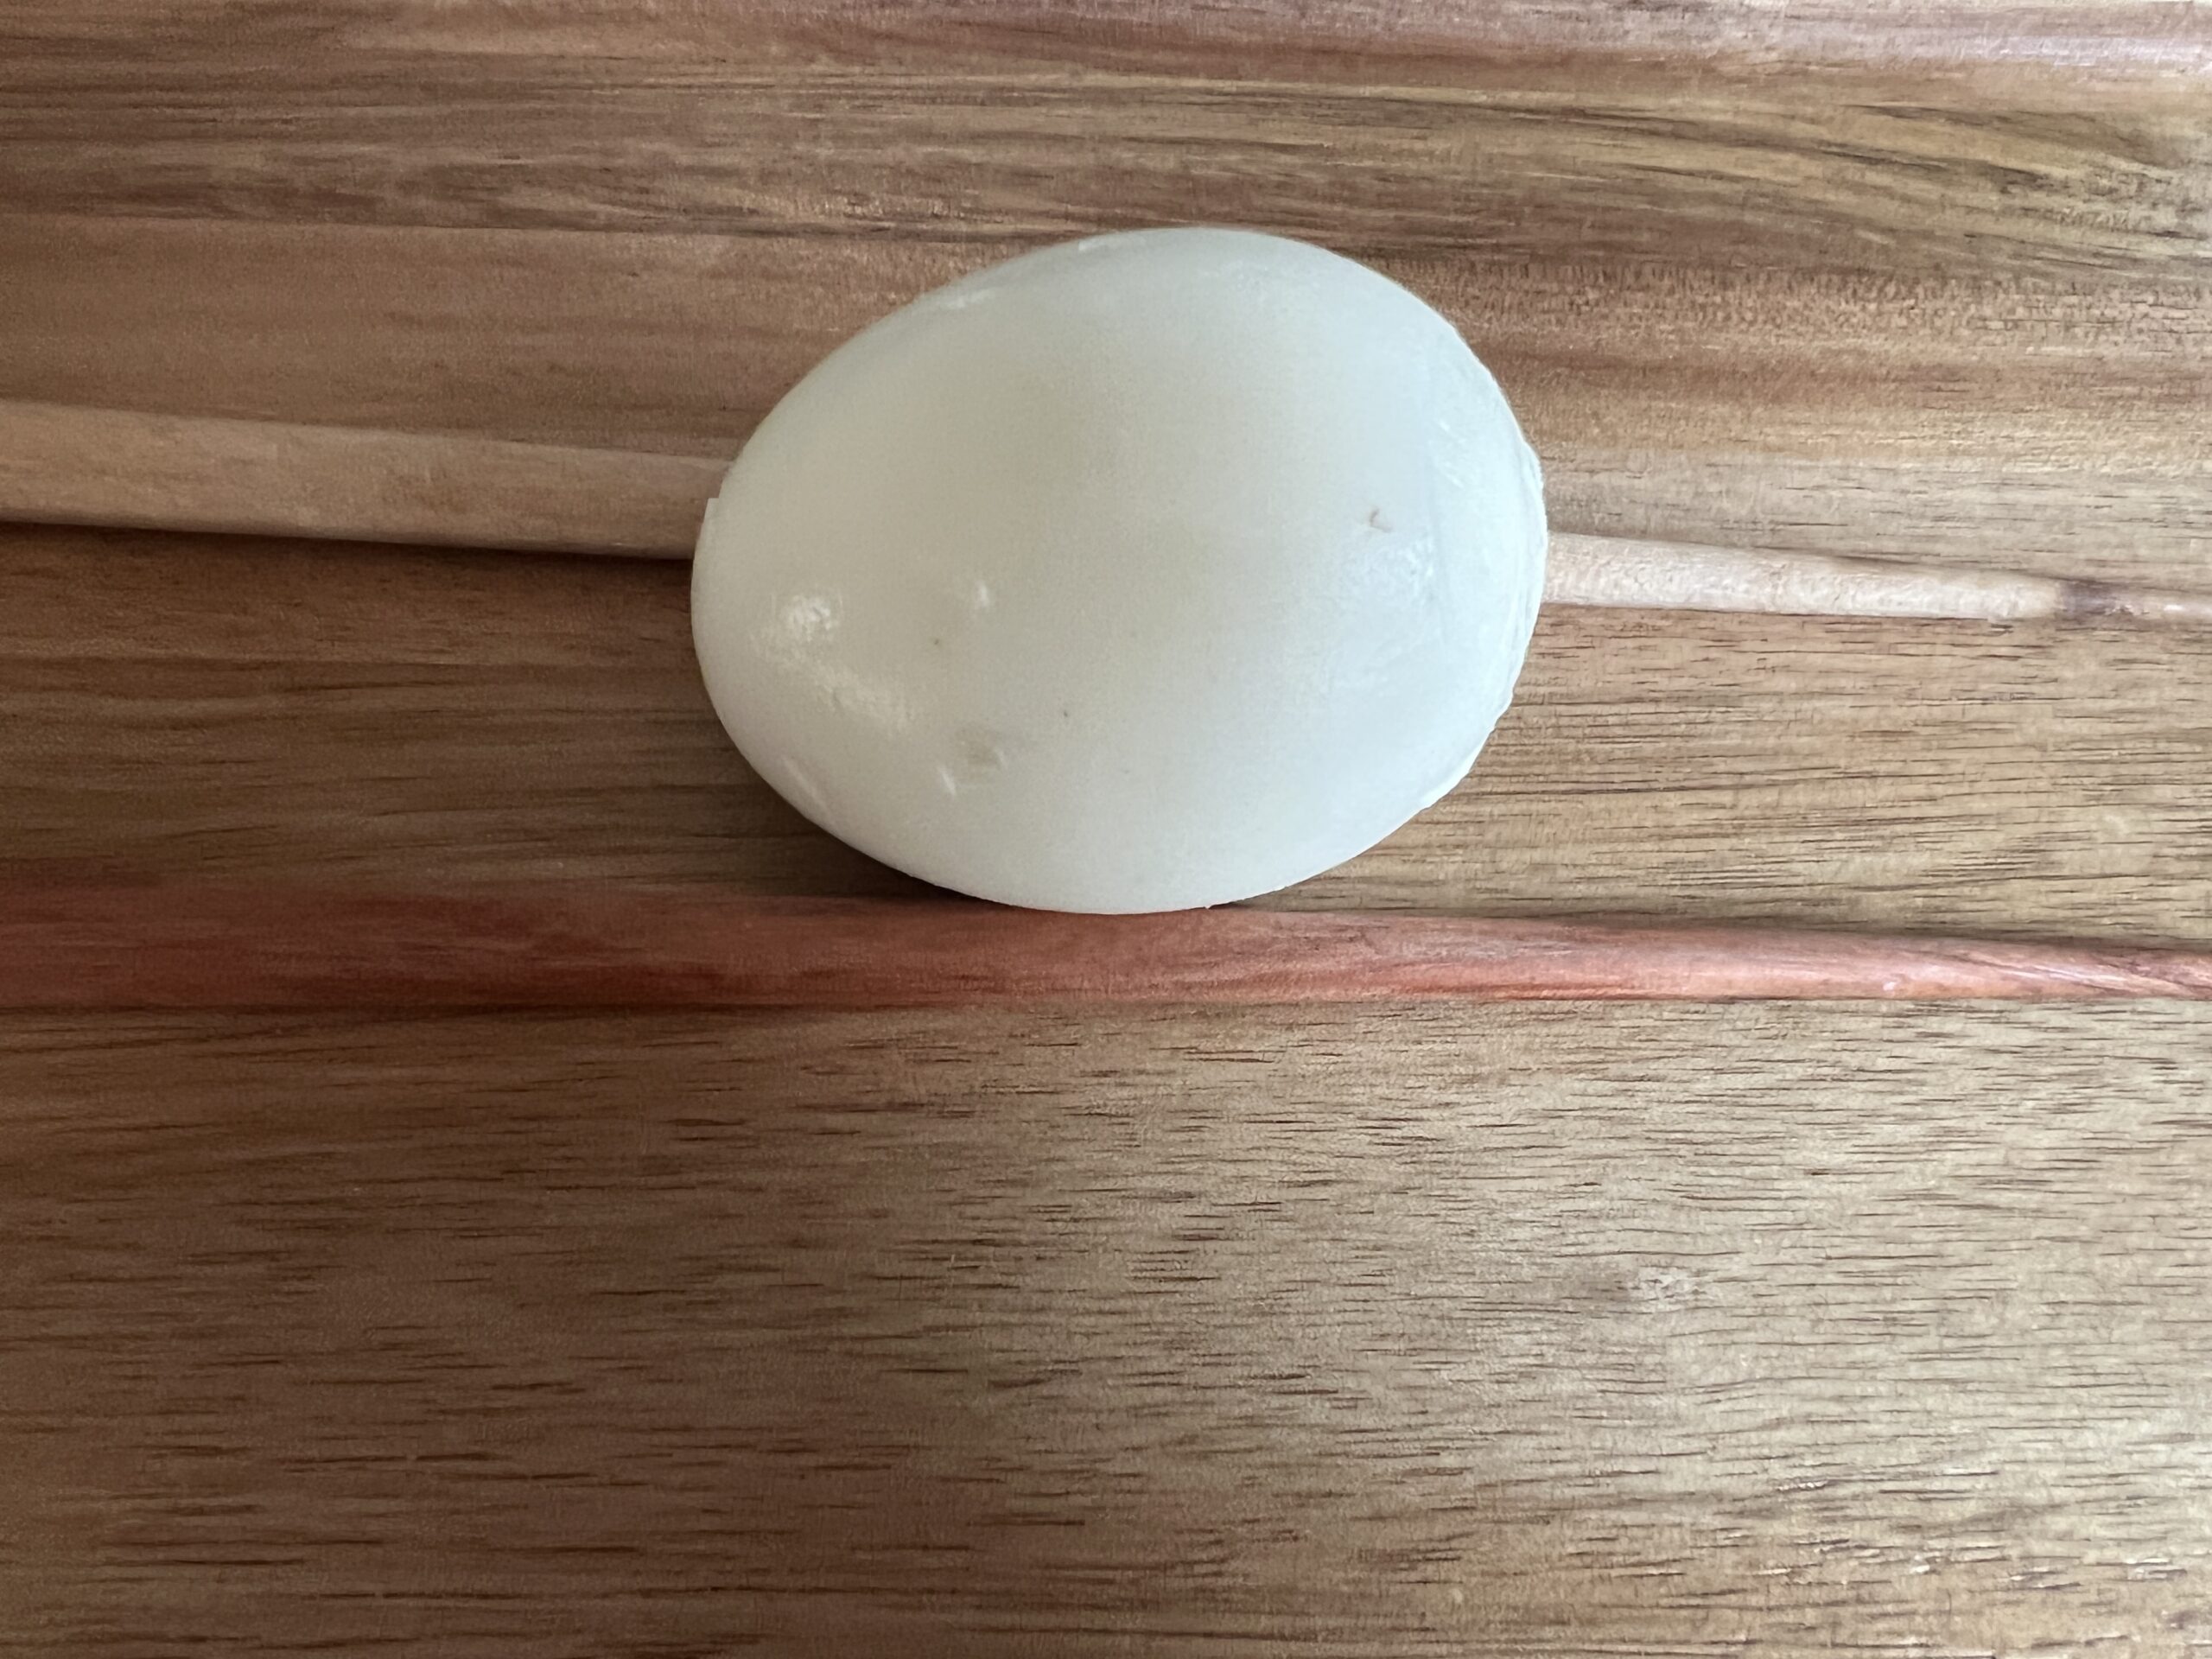 Hasselback Egg Tadka Recipe